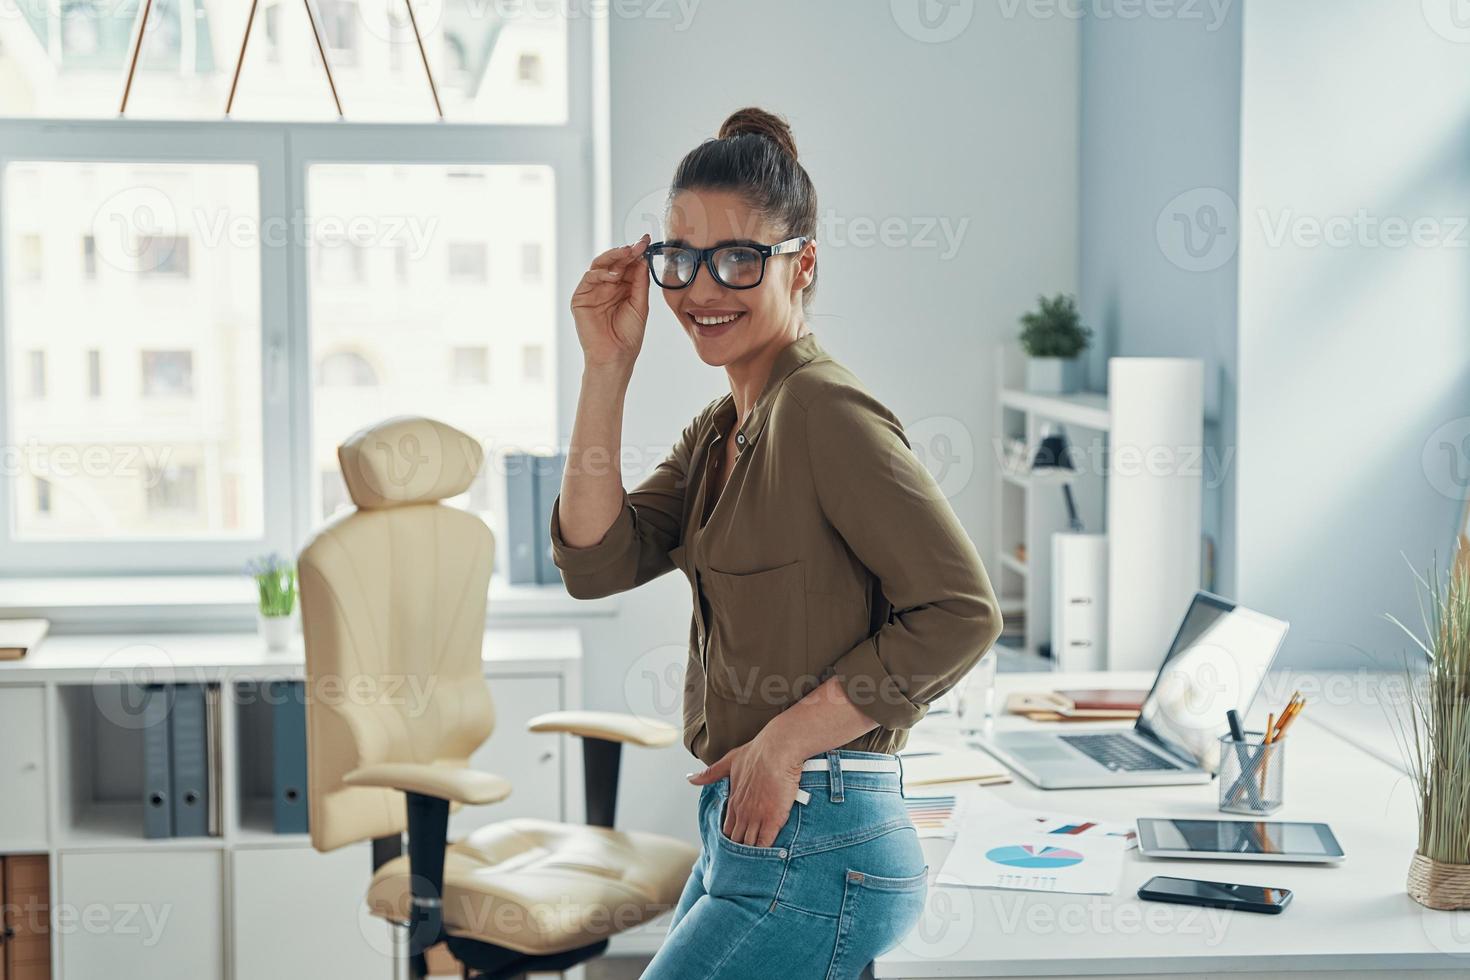 hermosa mujer joven con ropa informal elegante sonriendo y ajustando los anteojos mientras está pie en la oficina 13540919 Foto de stock en Vecteezy